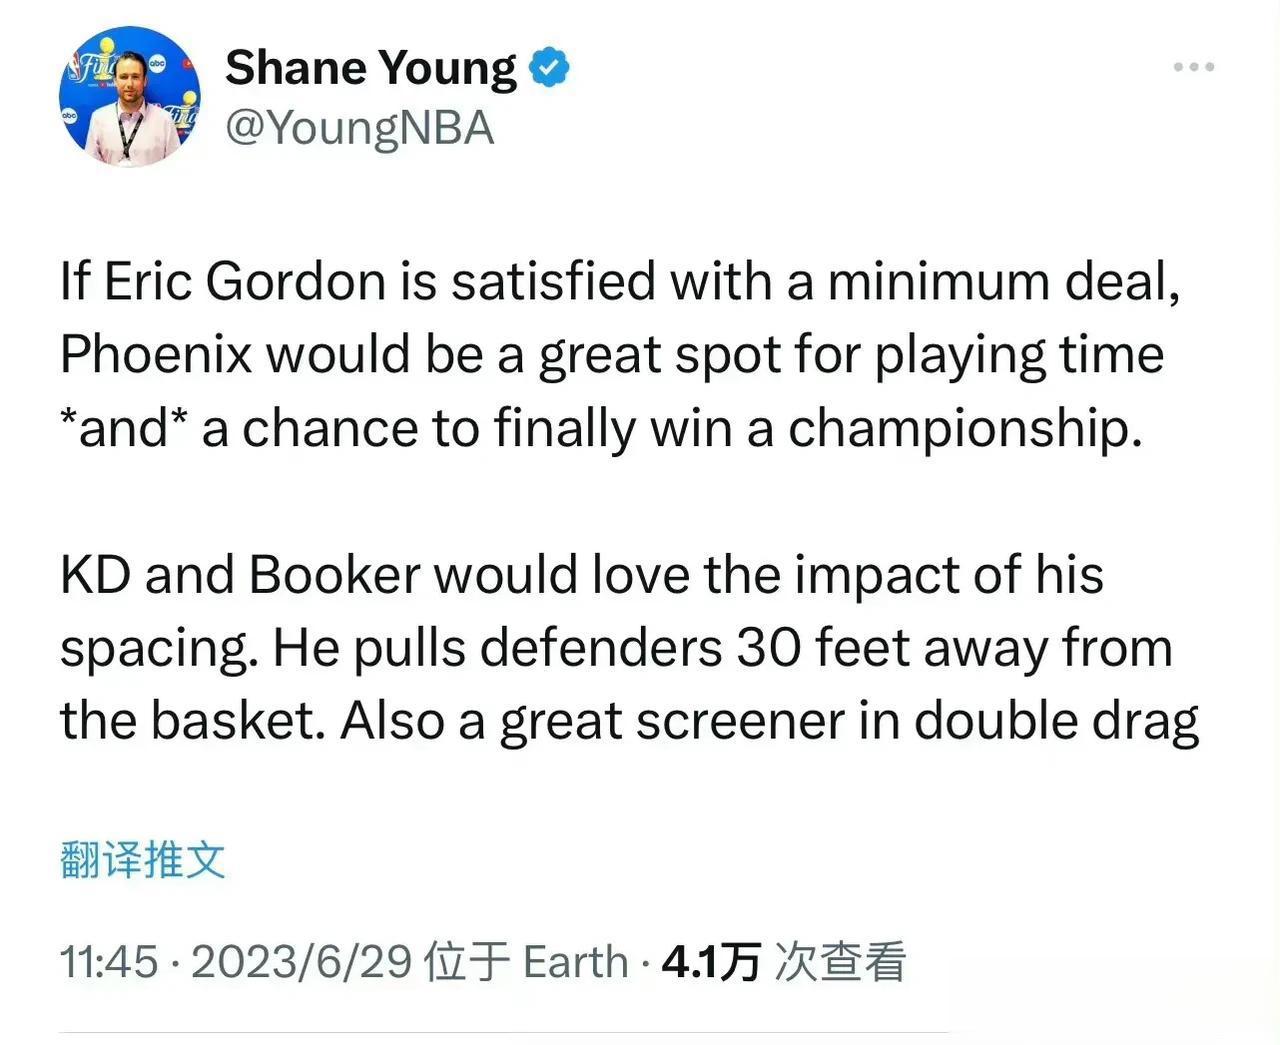 美媒认为如果戈登愿意降薪，太阳队会是他的好去处

Shane Young：如果戈